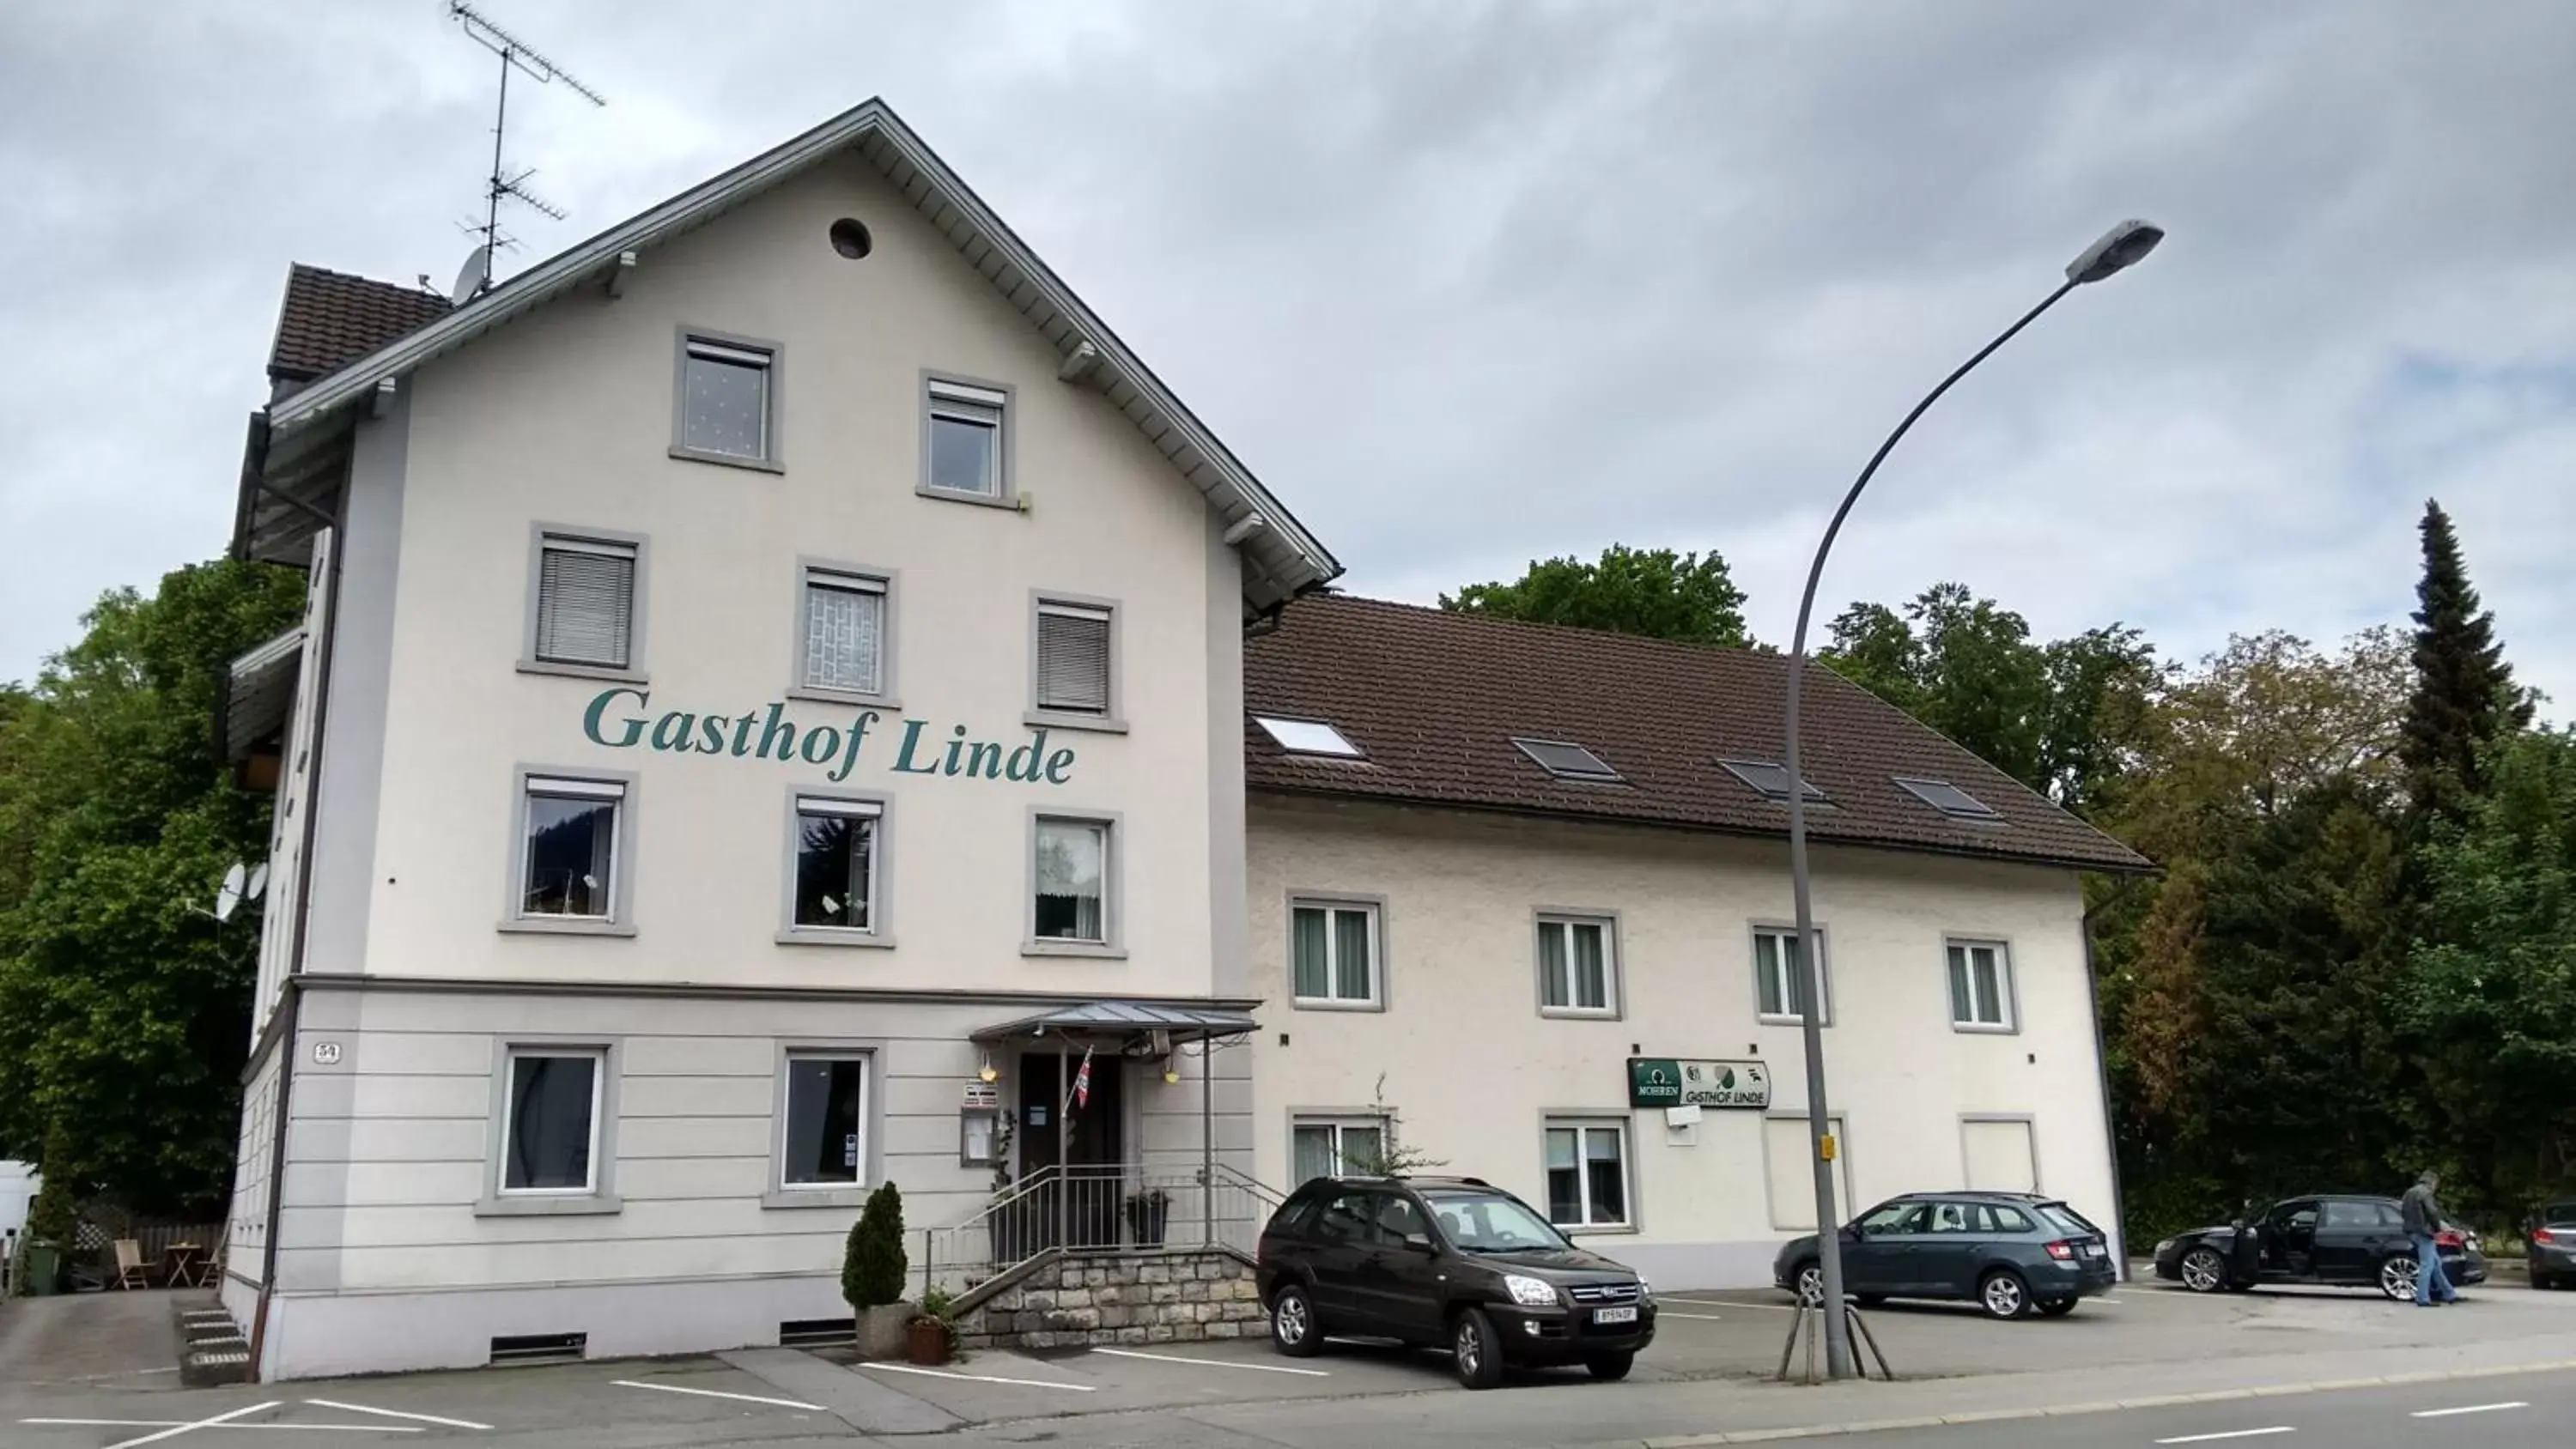 Property Building in Gasthof Linde